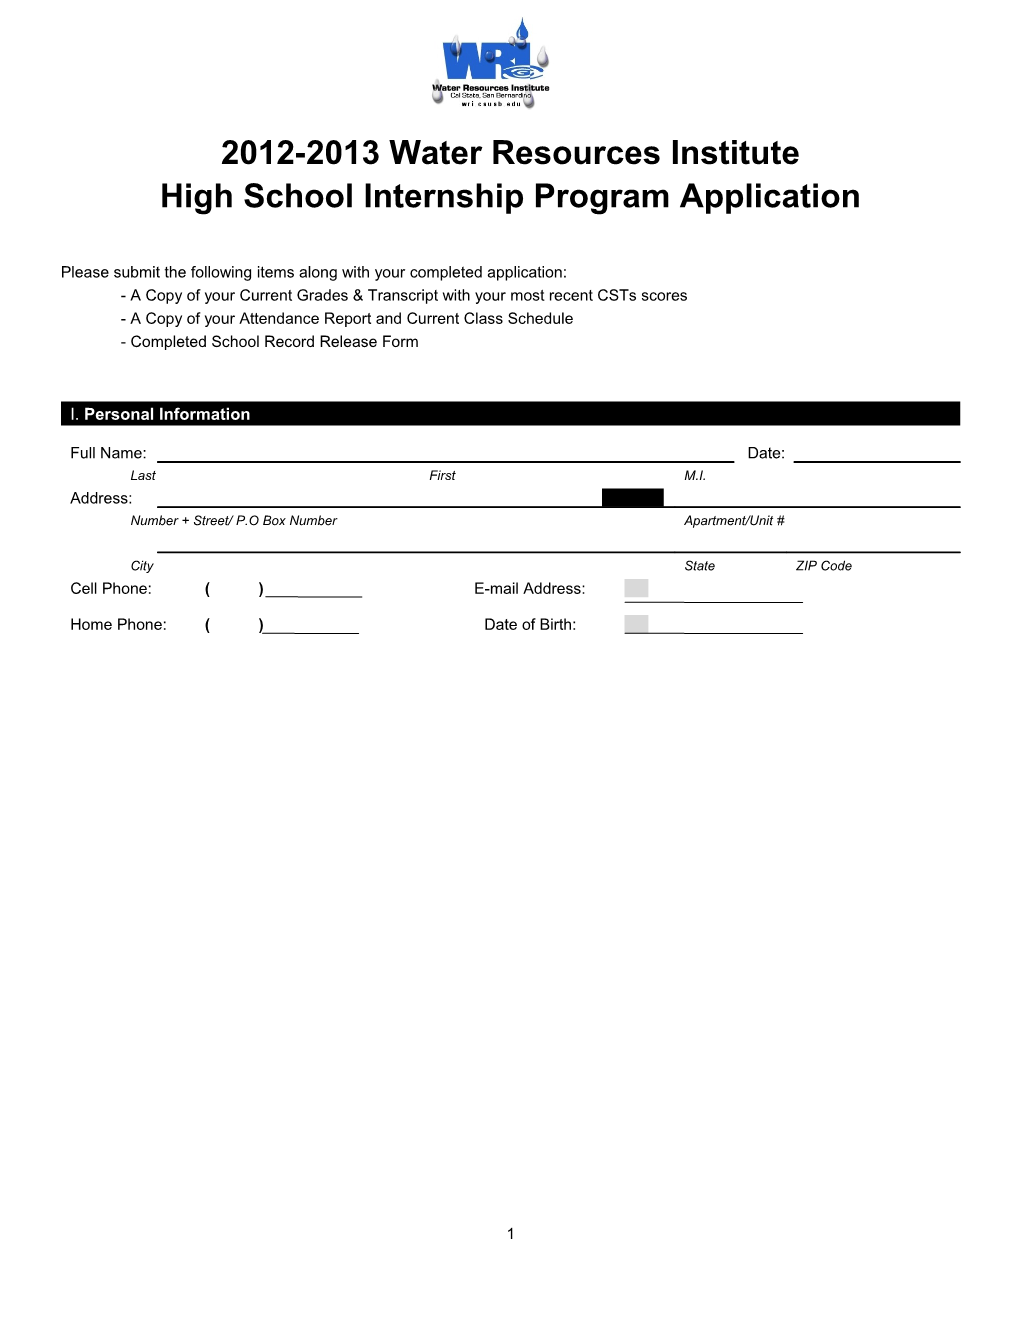 High School Internship Program Application